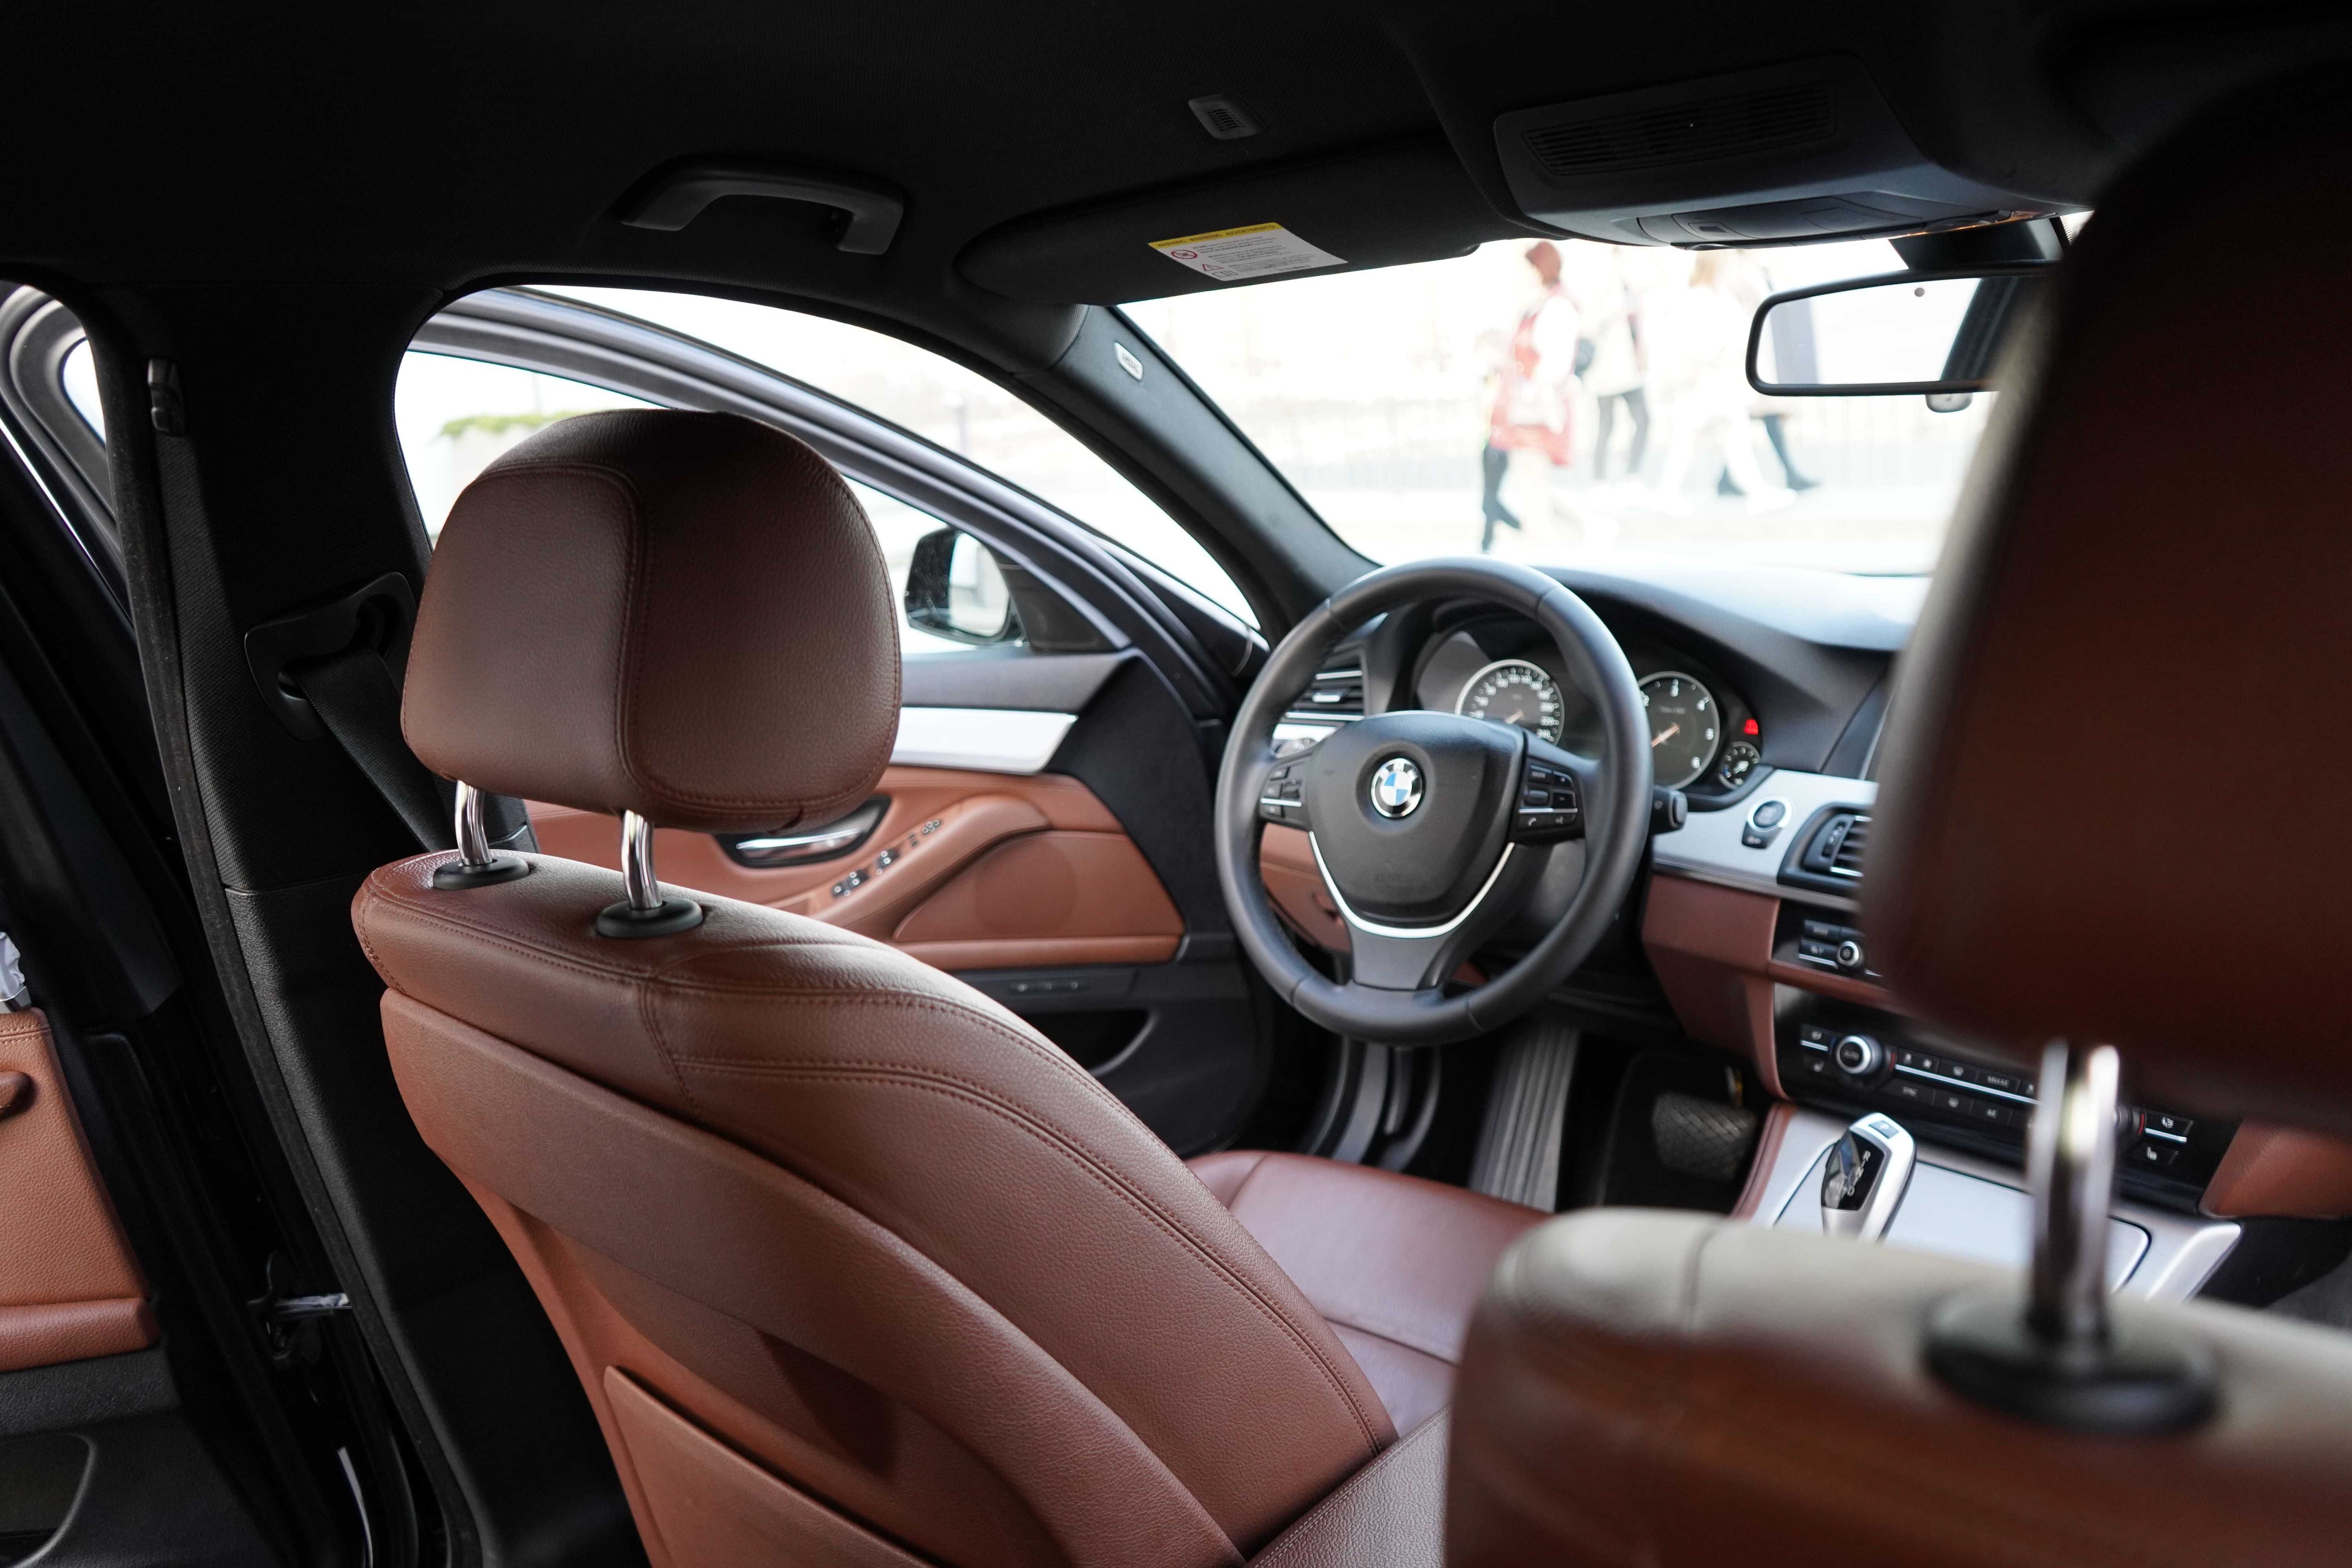 BMW 5 (525d xDrive) Series 2014